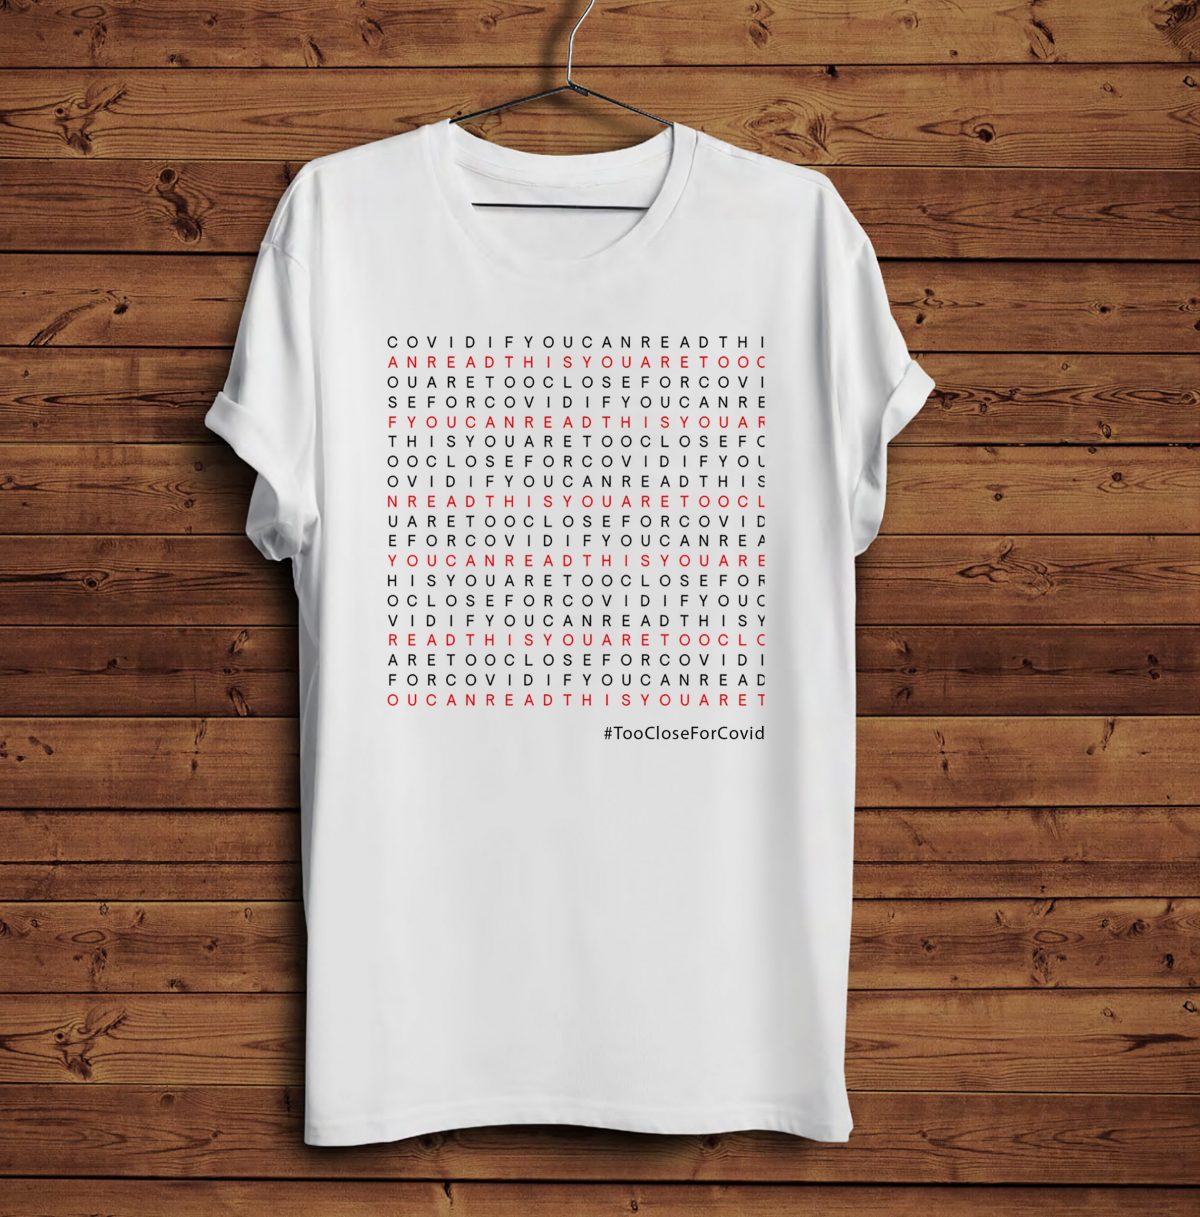 Design 1 – T-shirt